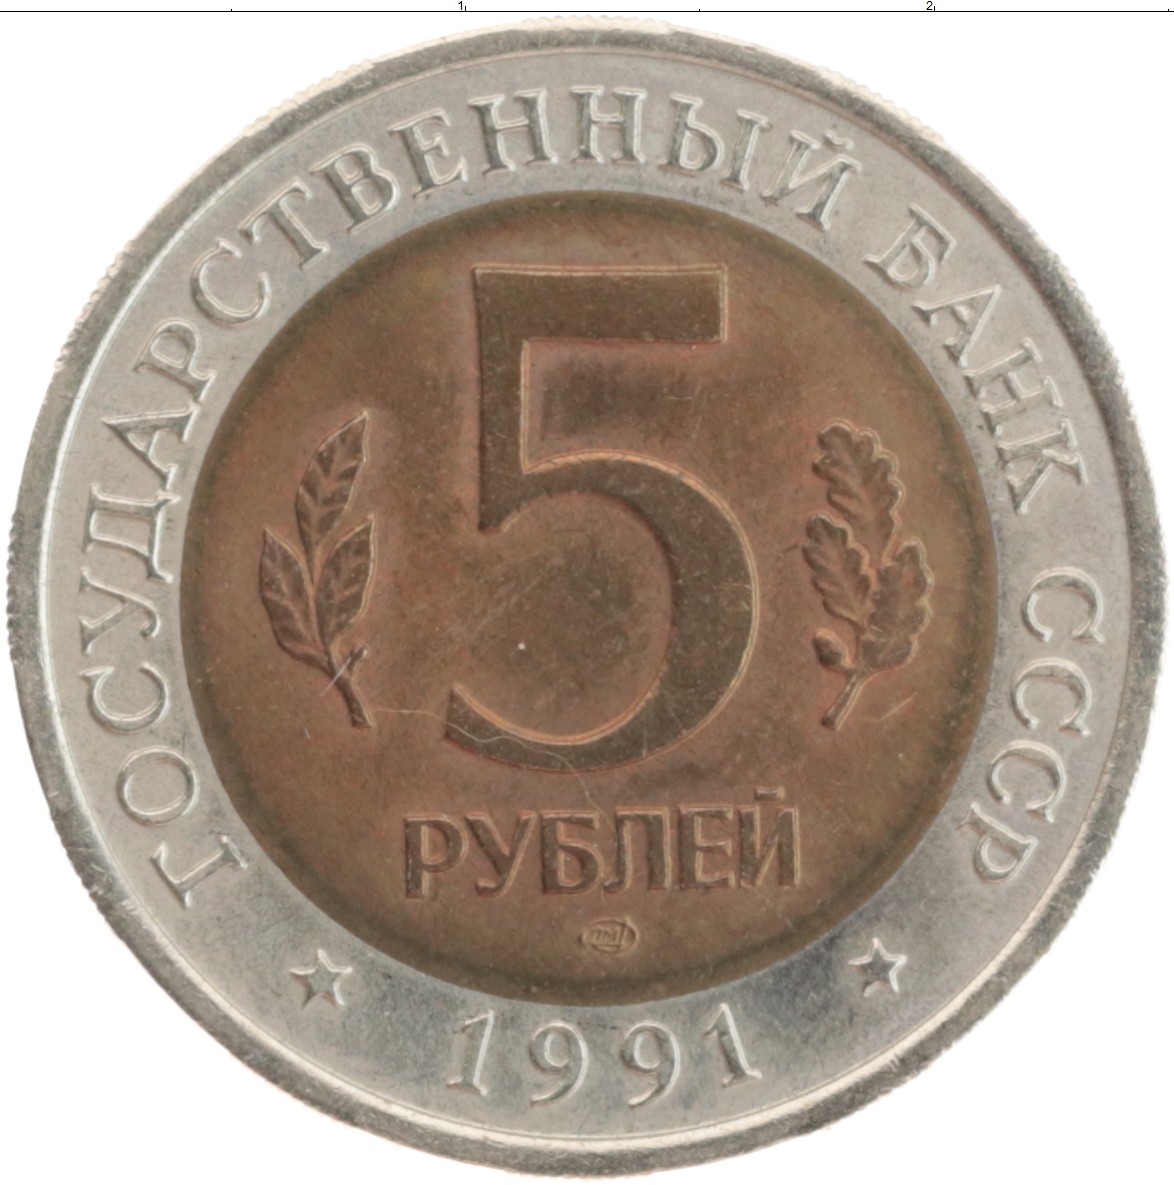 5 рублей медные. 5к 1991 Биметалл. Монета 5 рублей 1991 года. Биметаллическая монета 5 рублей. Монета СССР Биметалл.